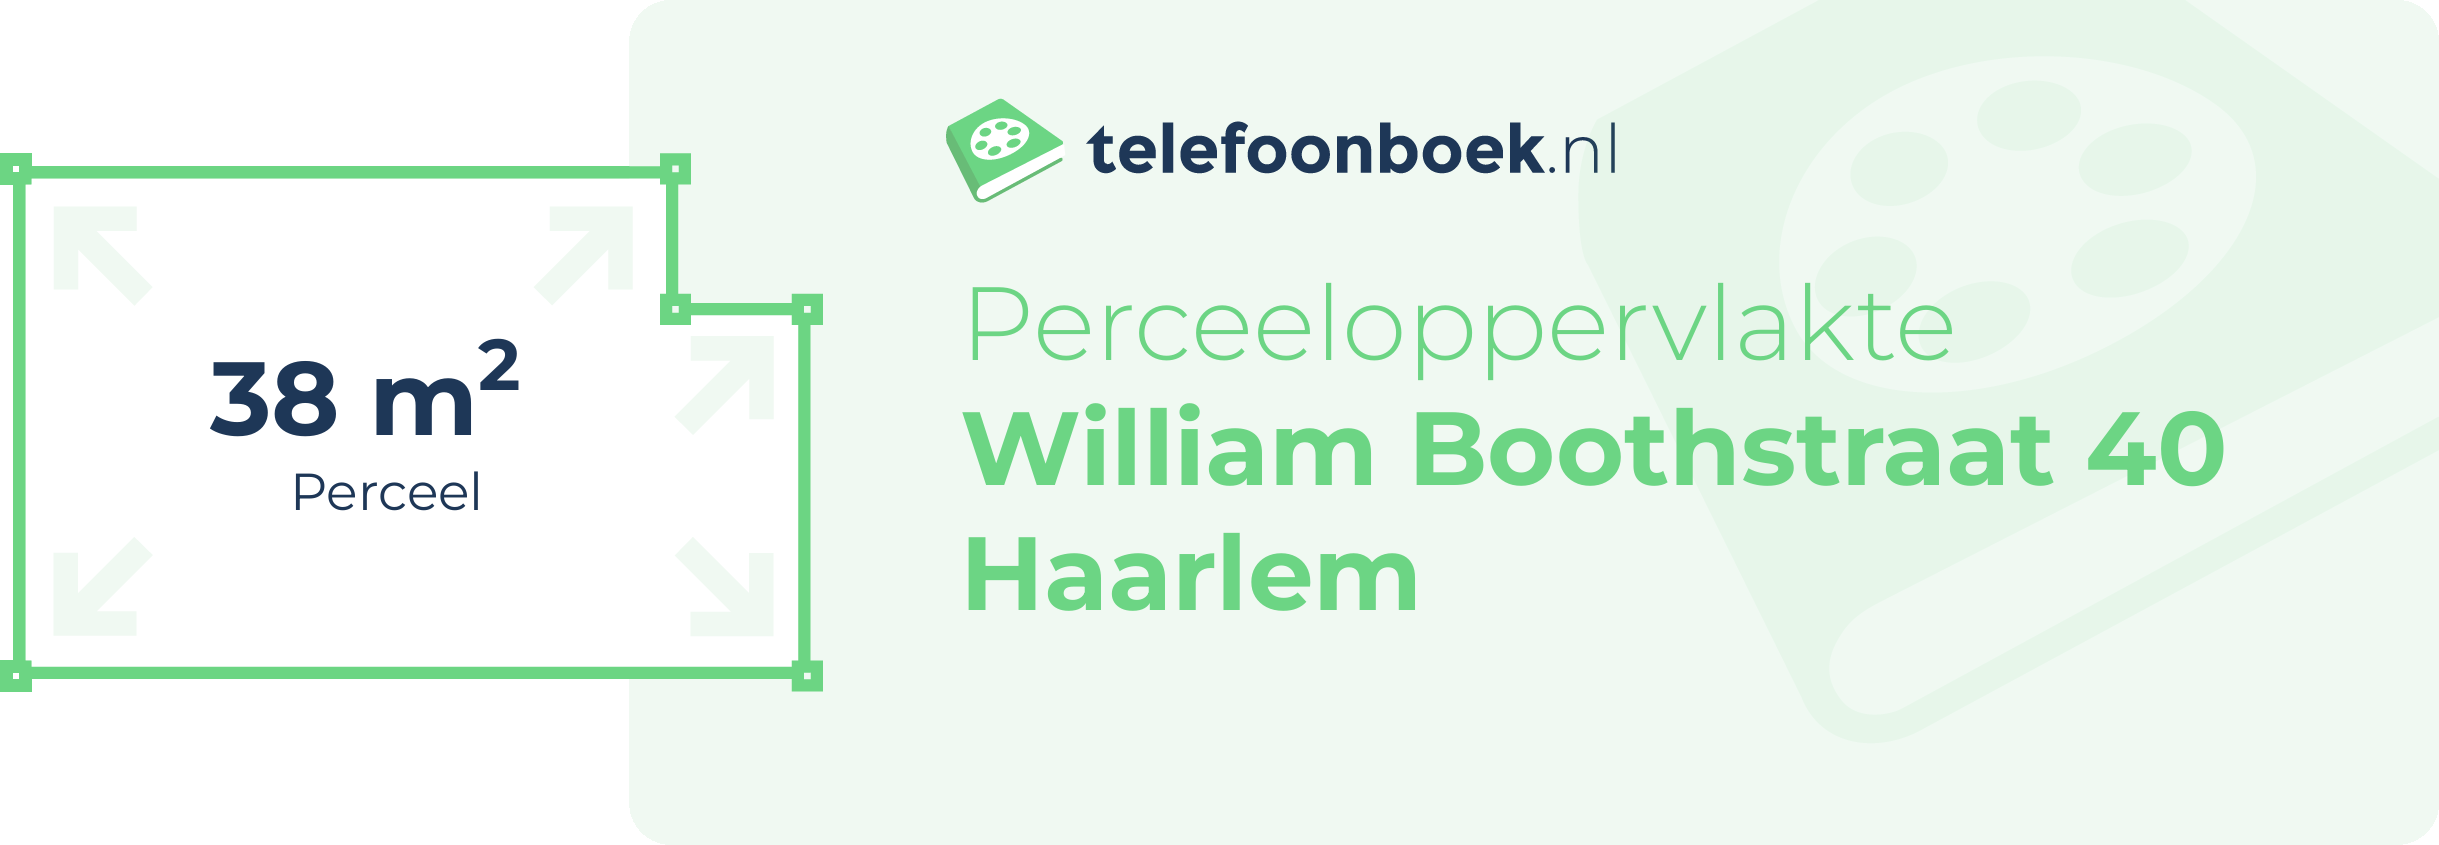 Perceeloppervlakte William Boothstraat 40 Haarlem